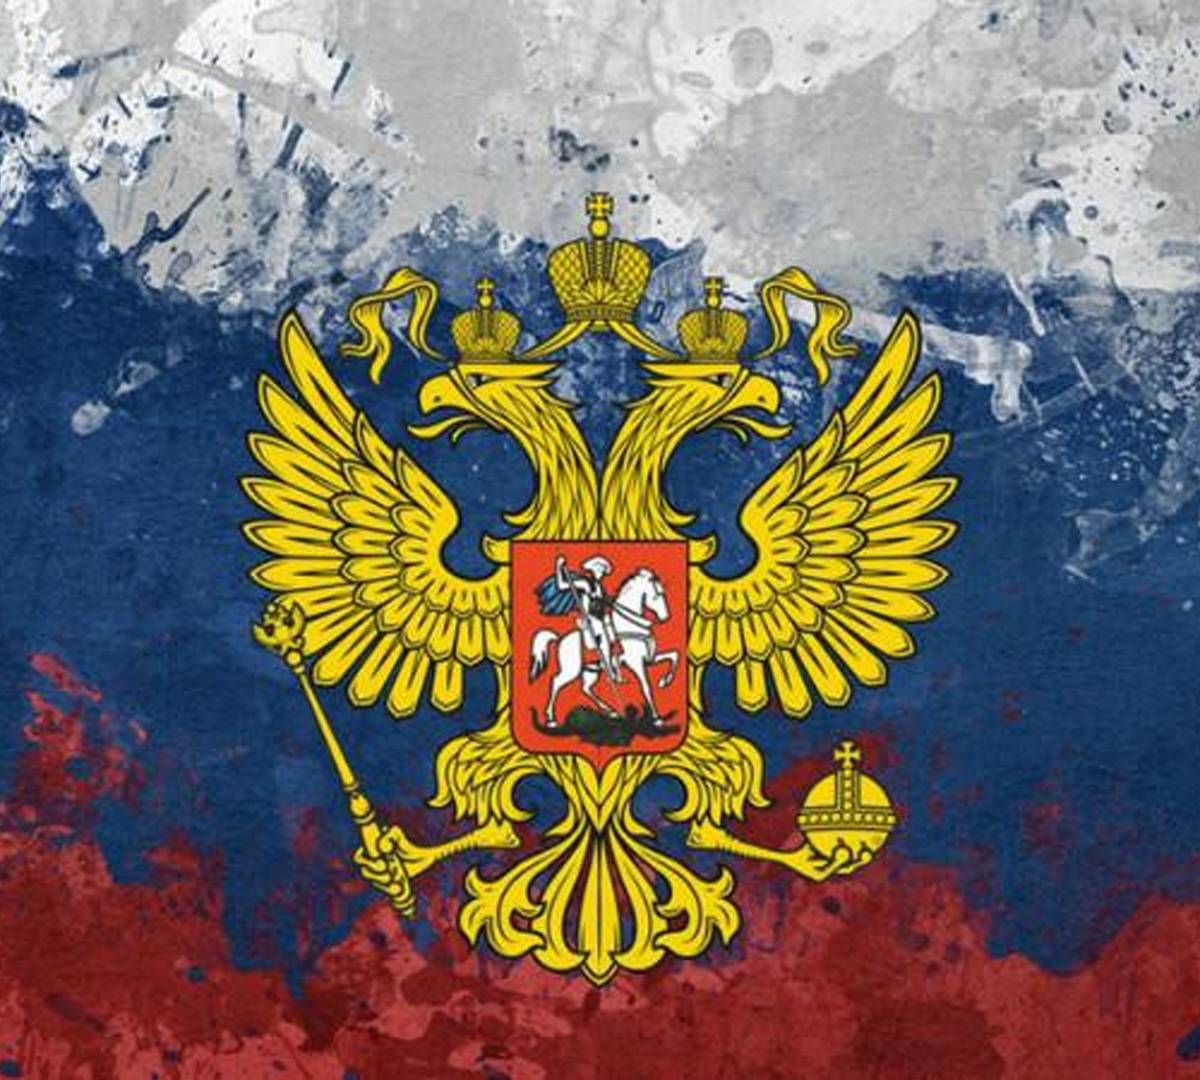 GlobalNR: Россия – последний оплот сопротивления «новым ценностям»